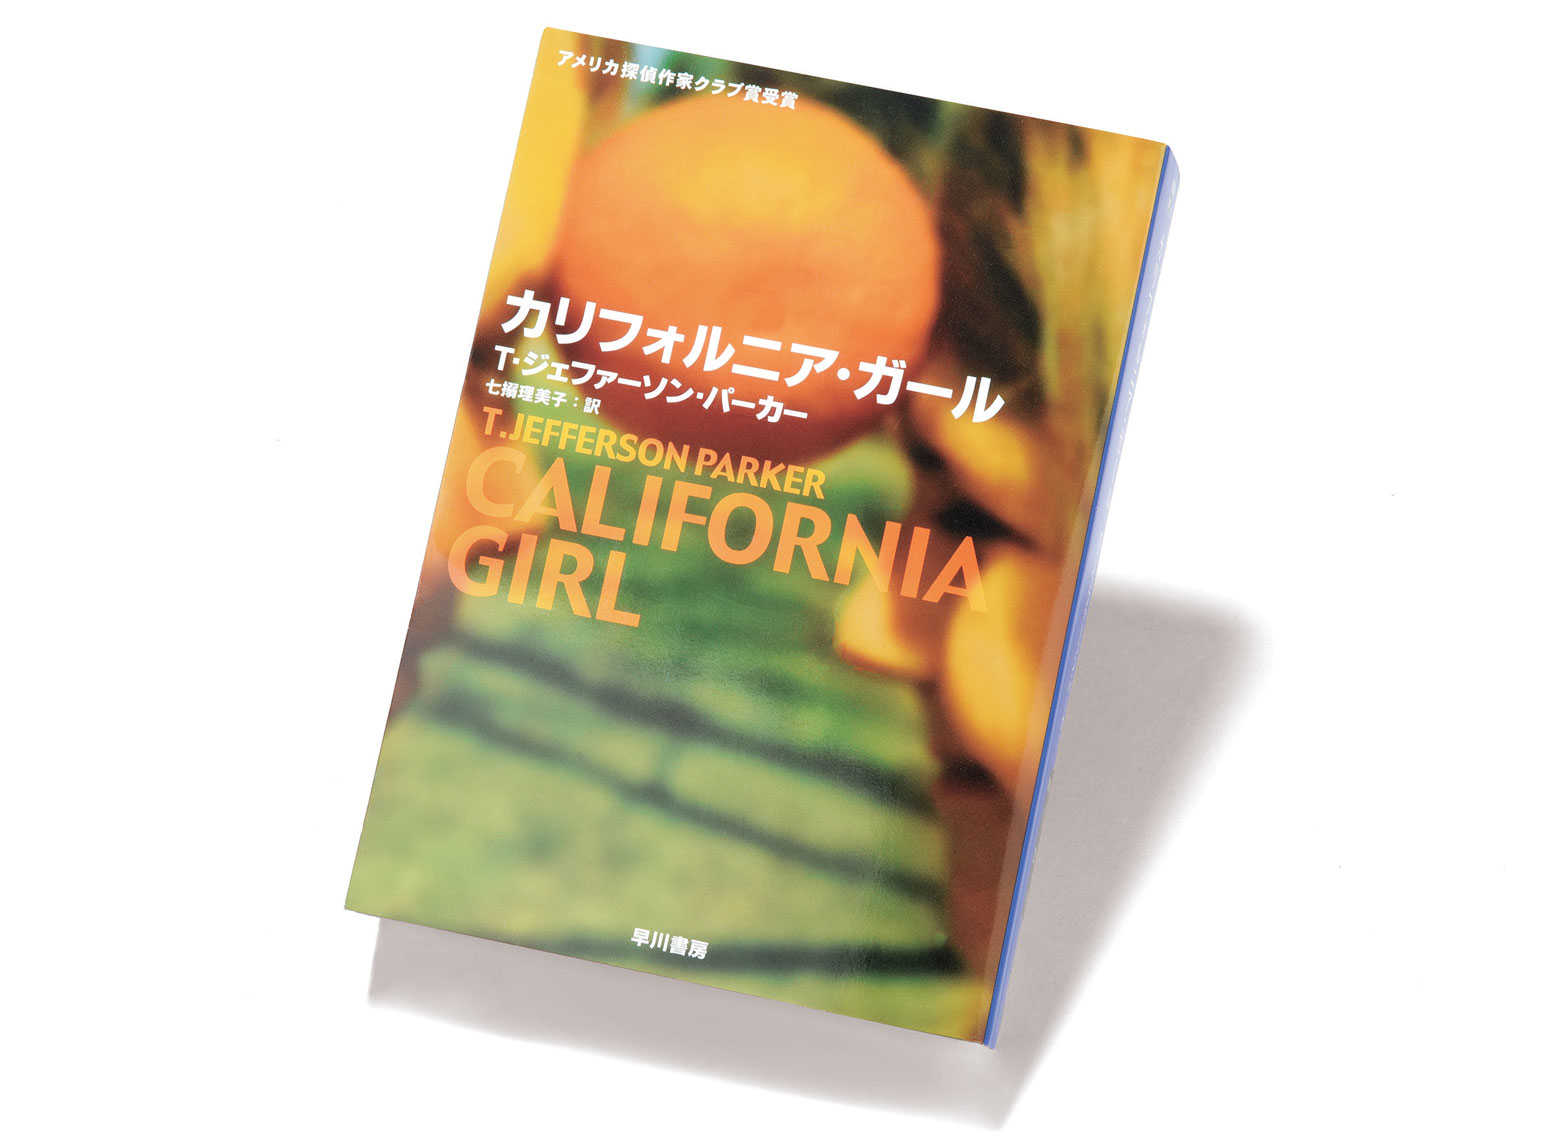 American Books カリフォルニアを巡る物語 カリフォルニア ガール 今月のテーマ オレンジカウンティ Culture Safari Online